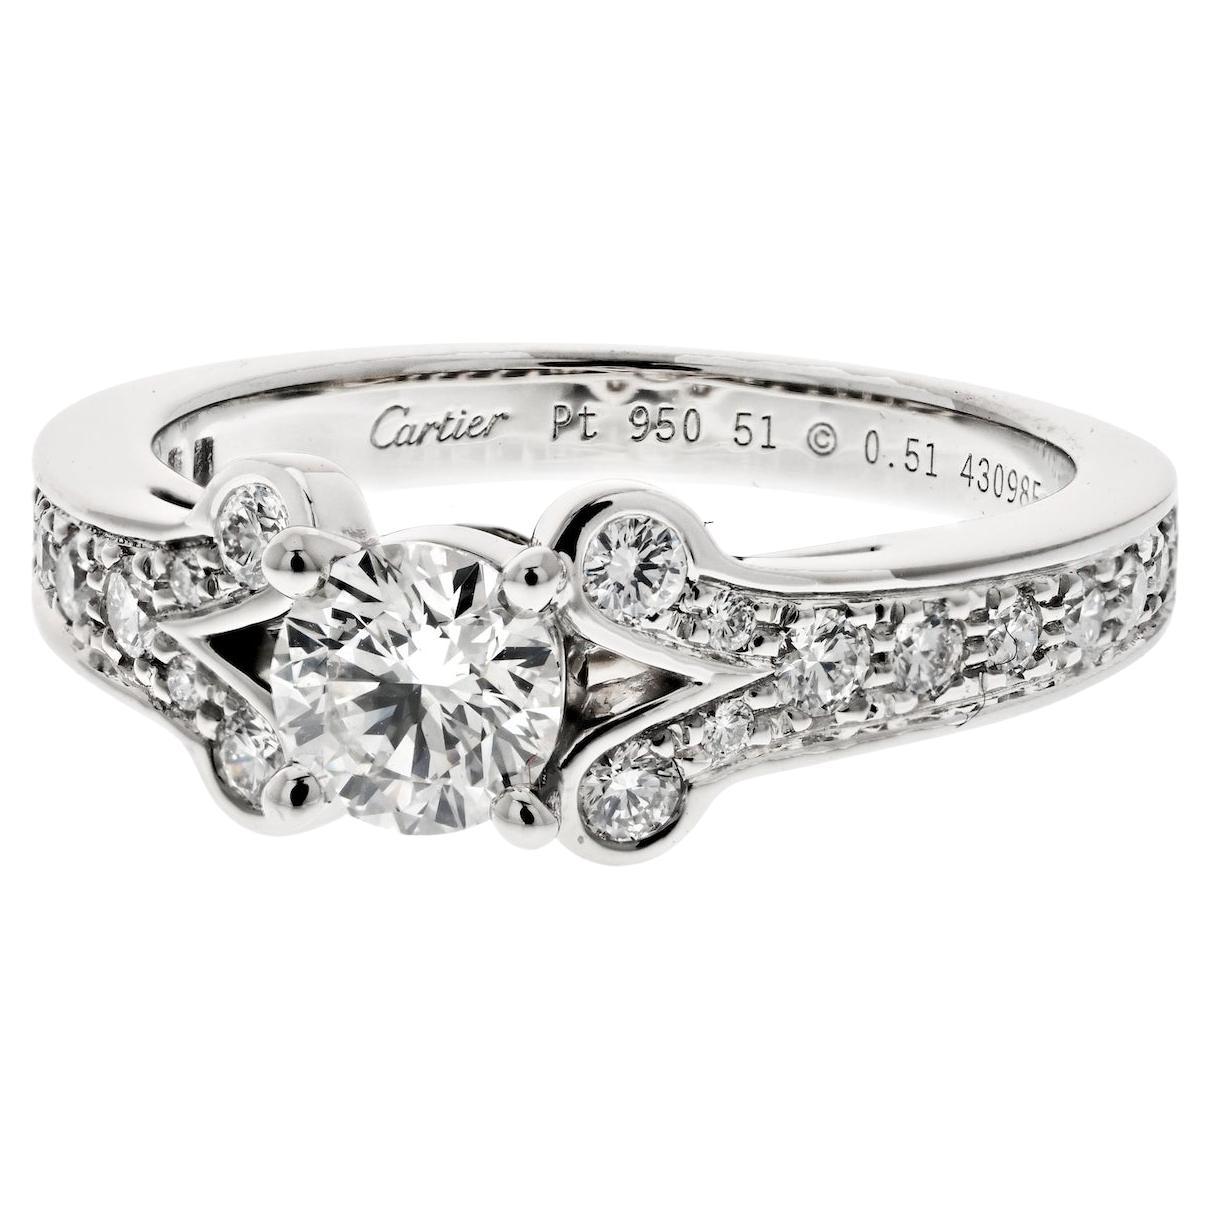 Cartier Bague de fiançailles ballerine en platine avec diamants taille ronde de 0,51 carat